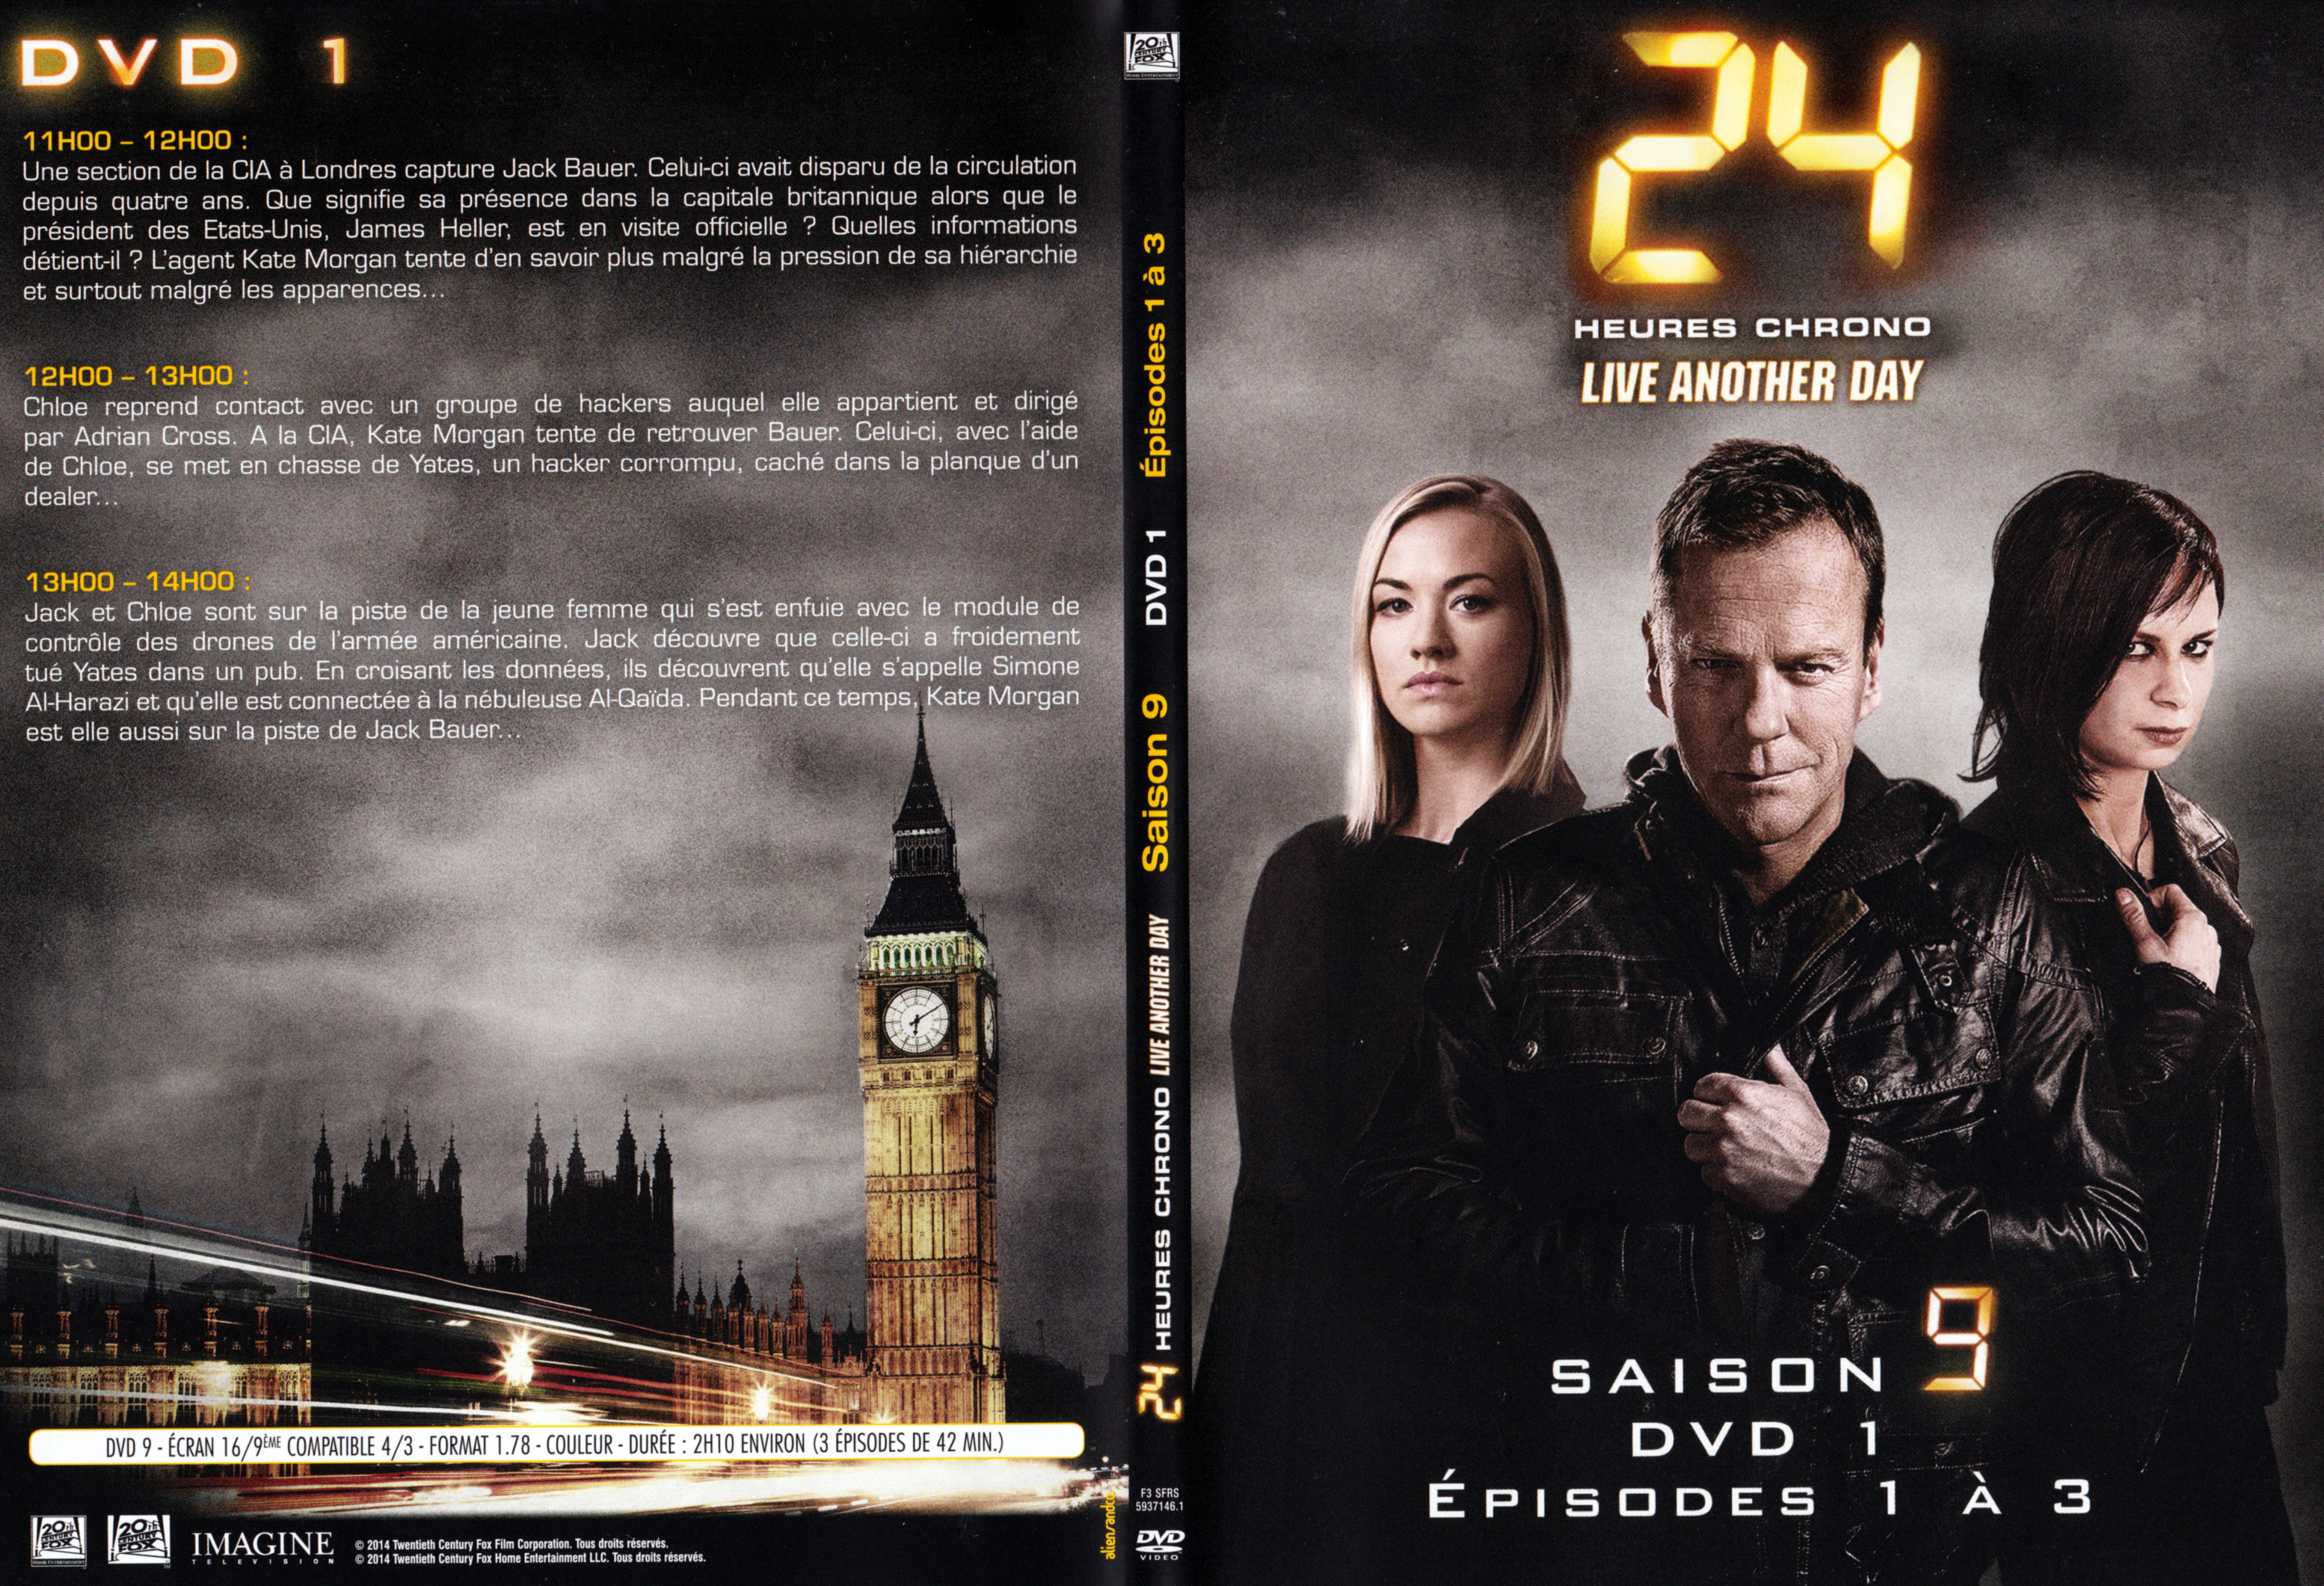 Jaquette DVD 24h saison 9 DVD 1